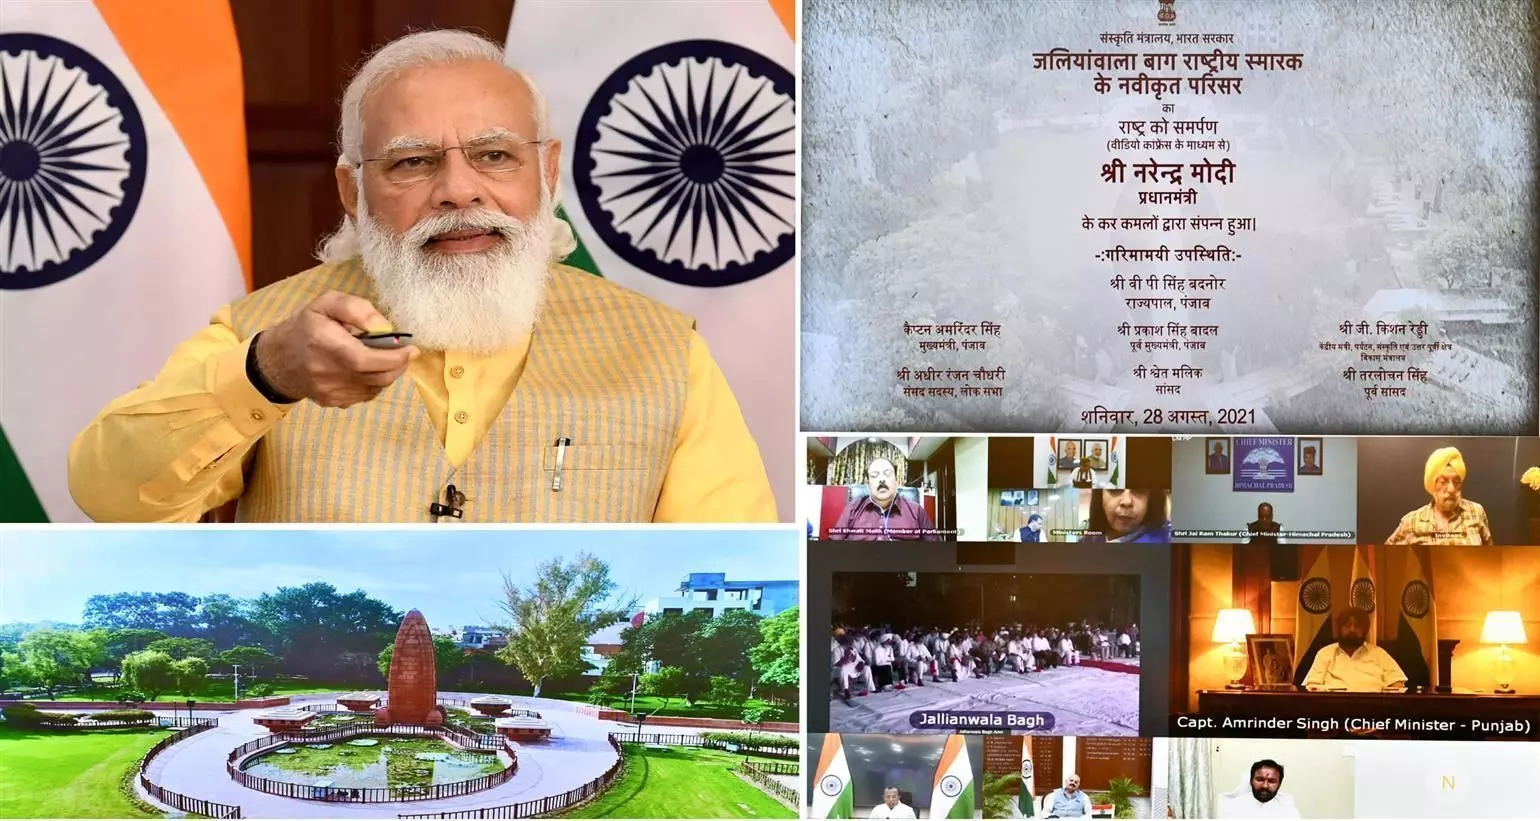 प्रधानमंत्री ने जलियांवाला बाग स्मारक के पुनर्निर्मित परिसर को राष्ट्र को समर्पित किया..